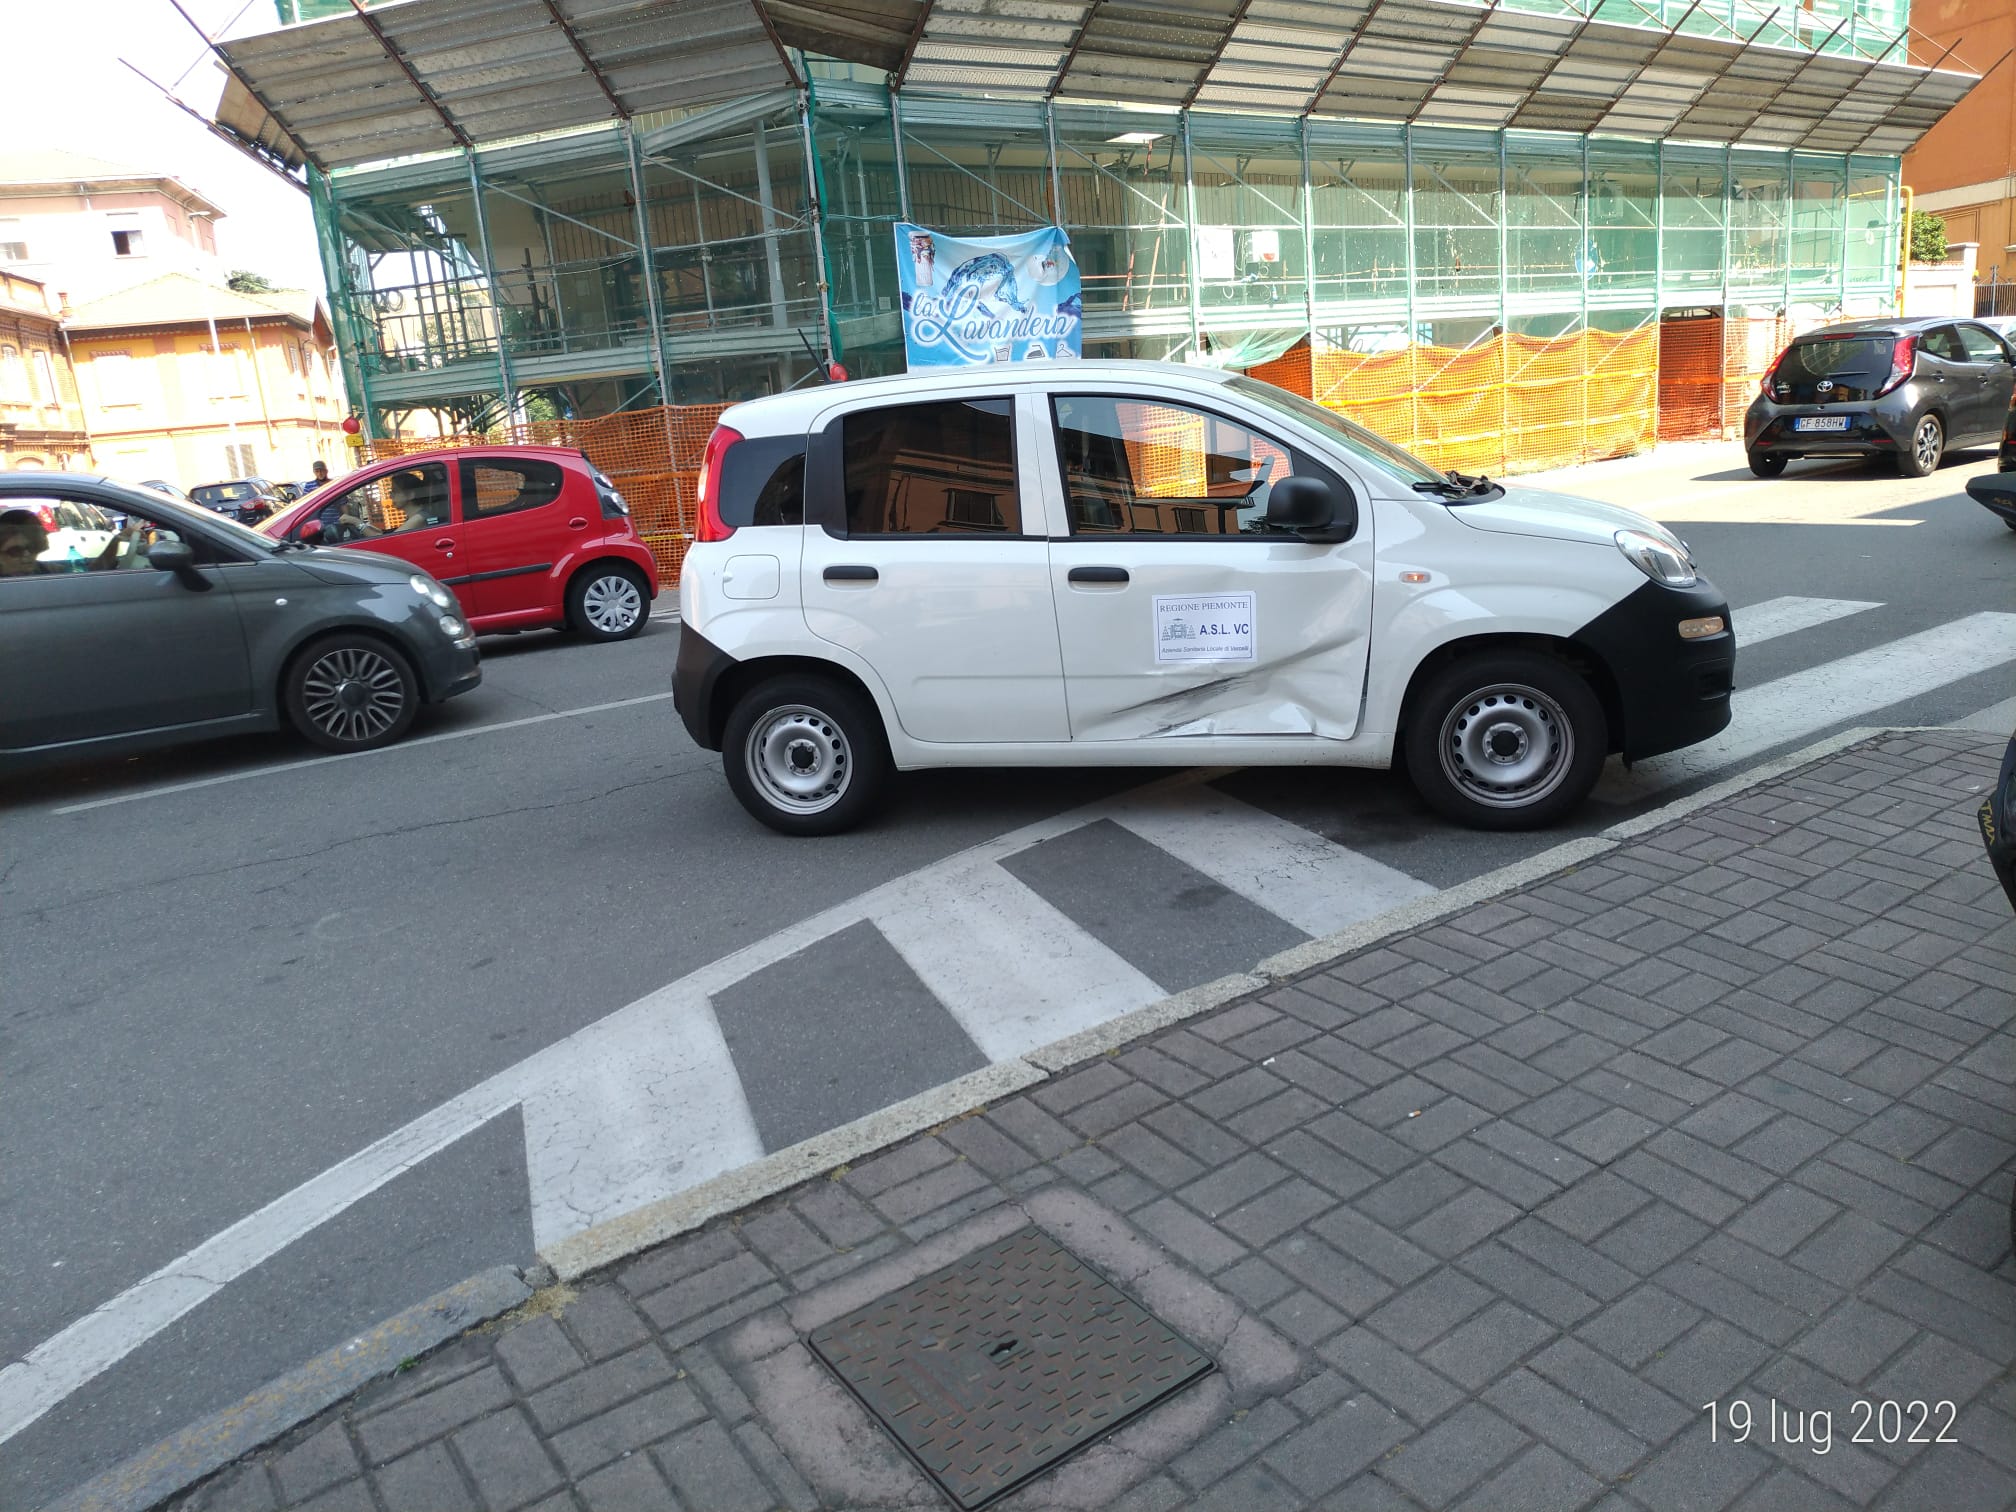 VERCELLI / CORSO FIUME – Incidente stradale, coinvolta Panda dell’Asl